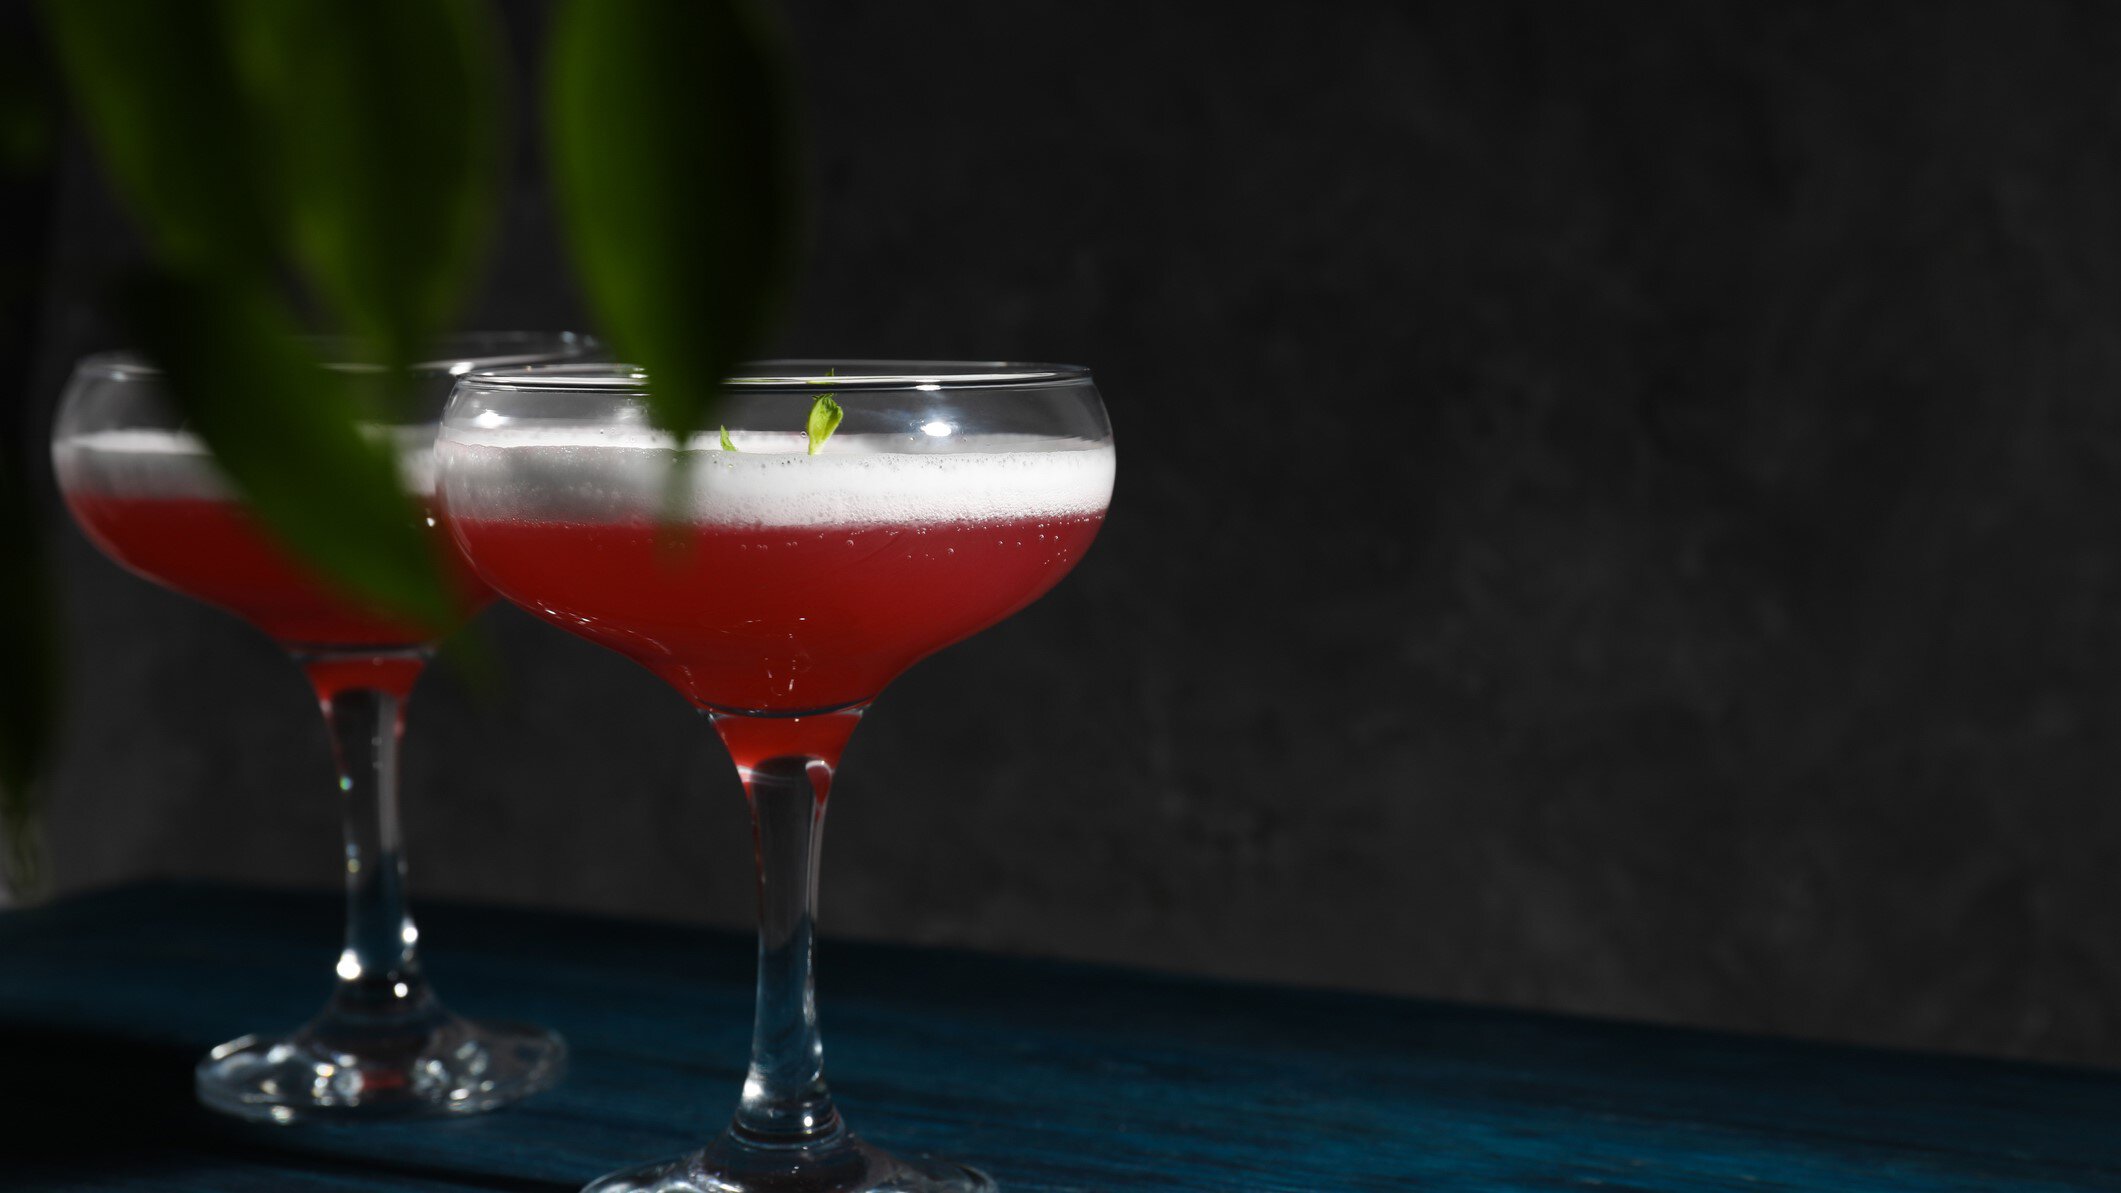 Zwie Cosmo Sour Cocktails in Coupette auf dunklem Untergrund vor dunklem Hintergrund. Im Bild Blätter. Frontalansicht.